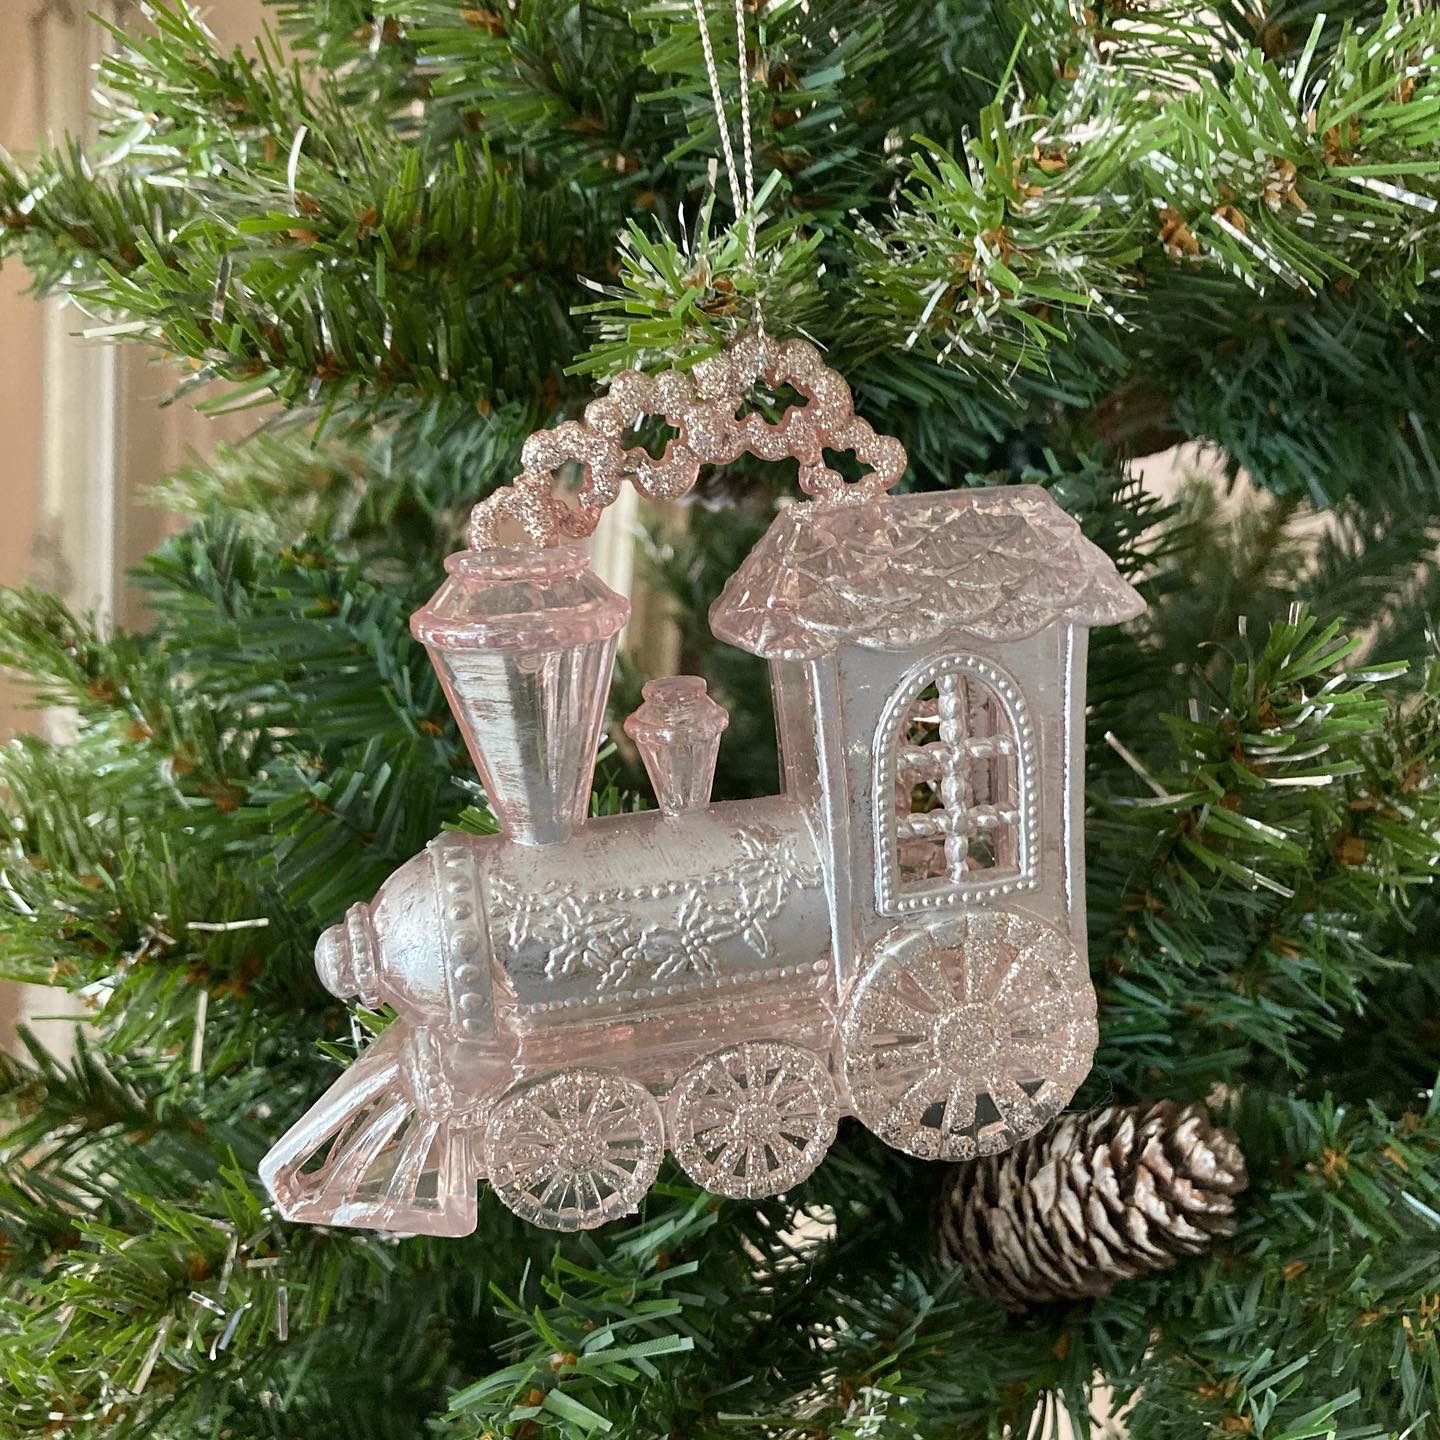 木製 クリスマス 飾り A 列車 北欧 オーナメント 玄関 オブジェ ツリー 